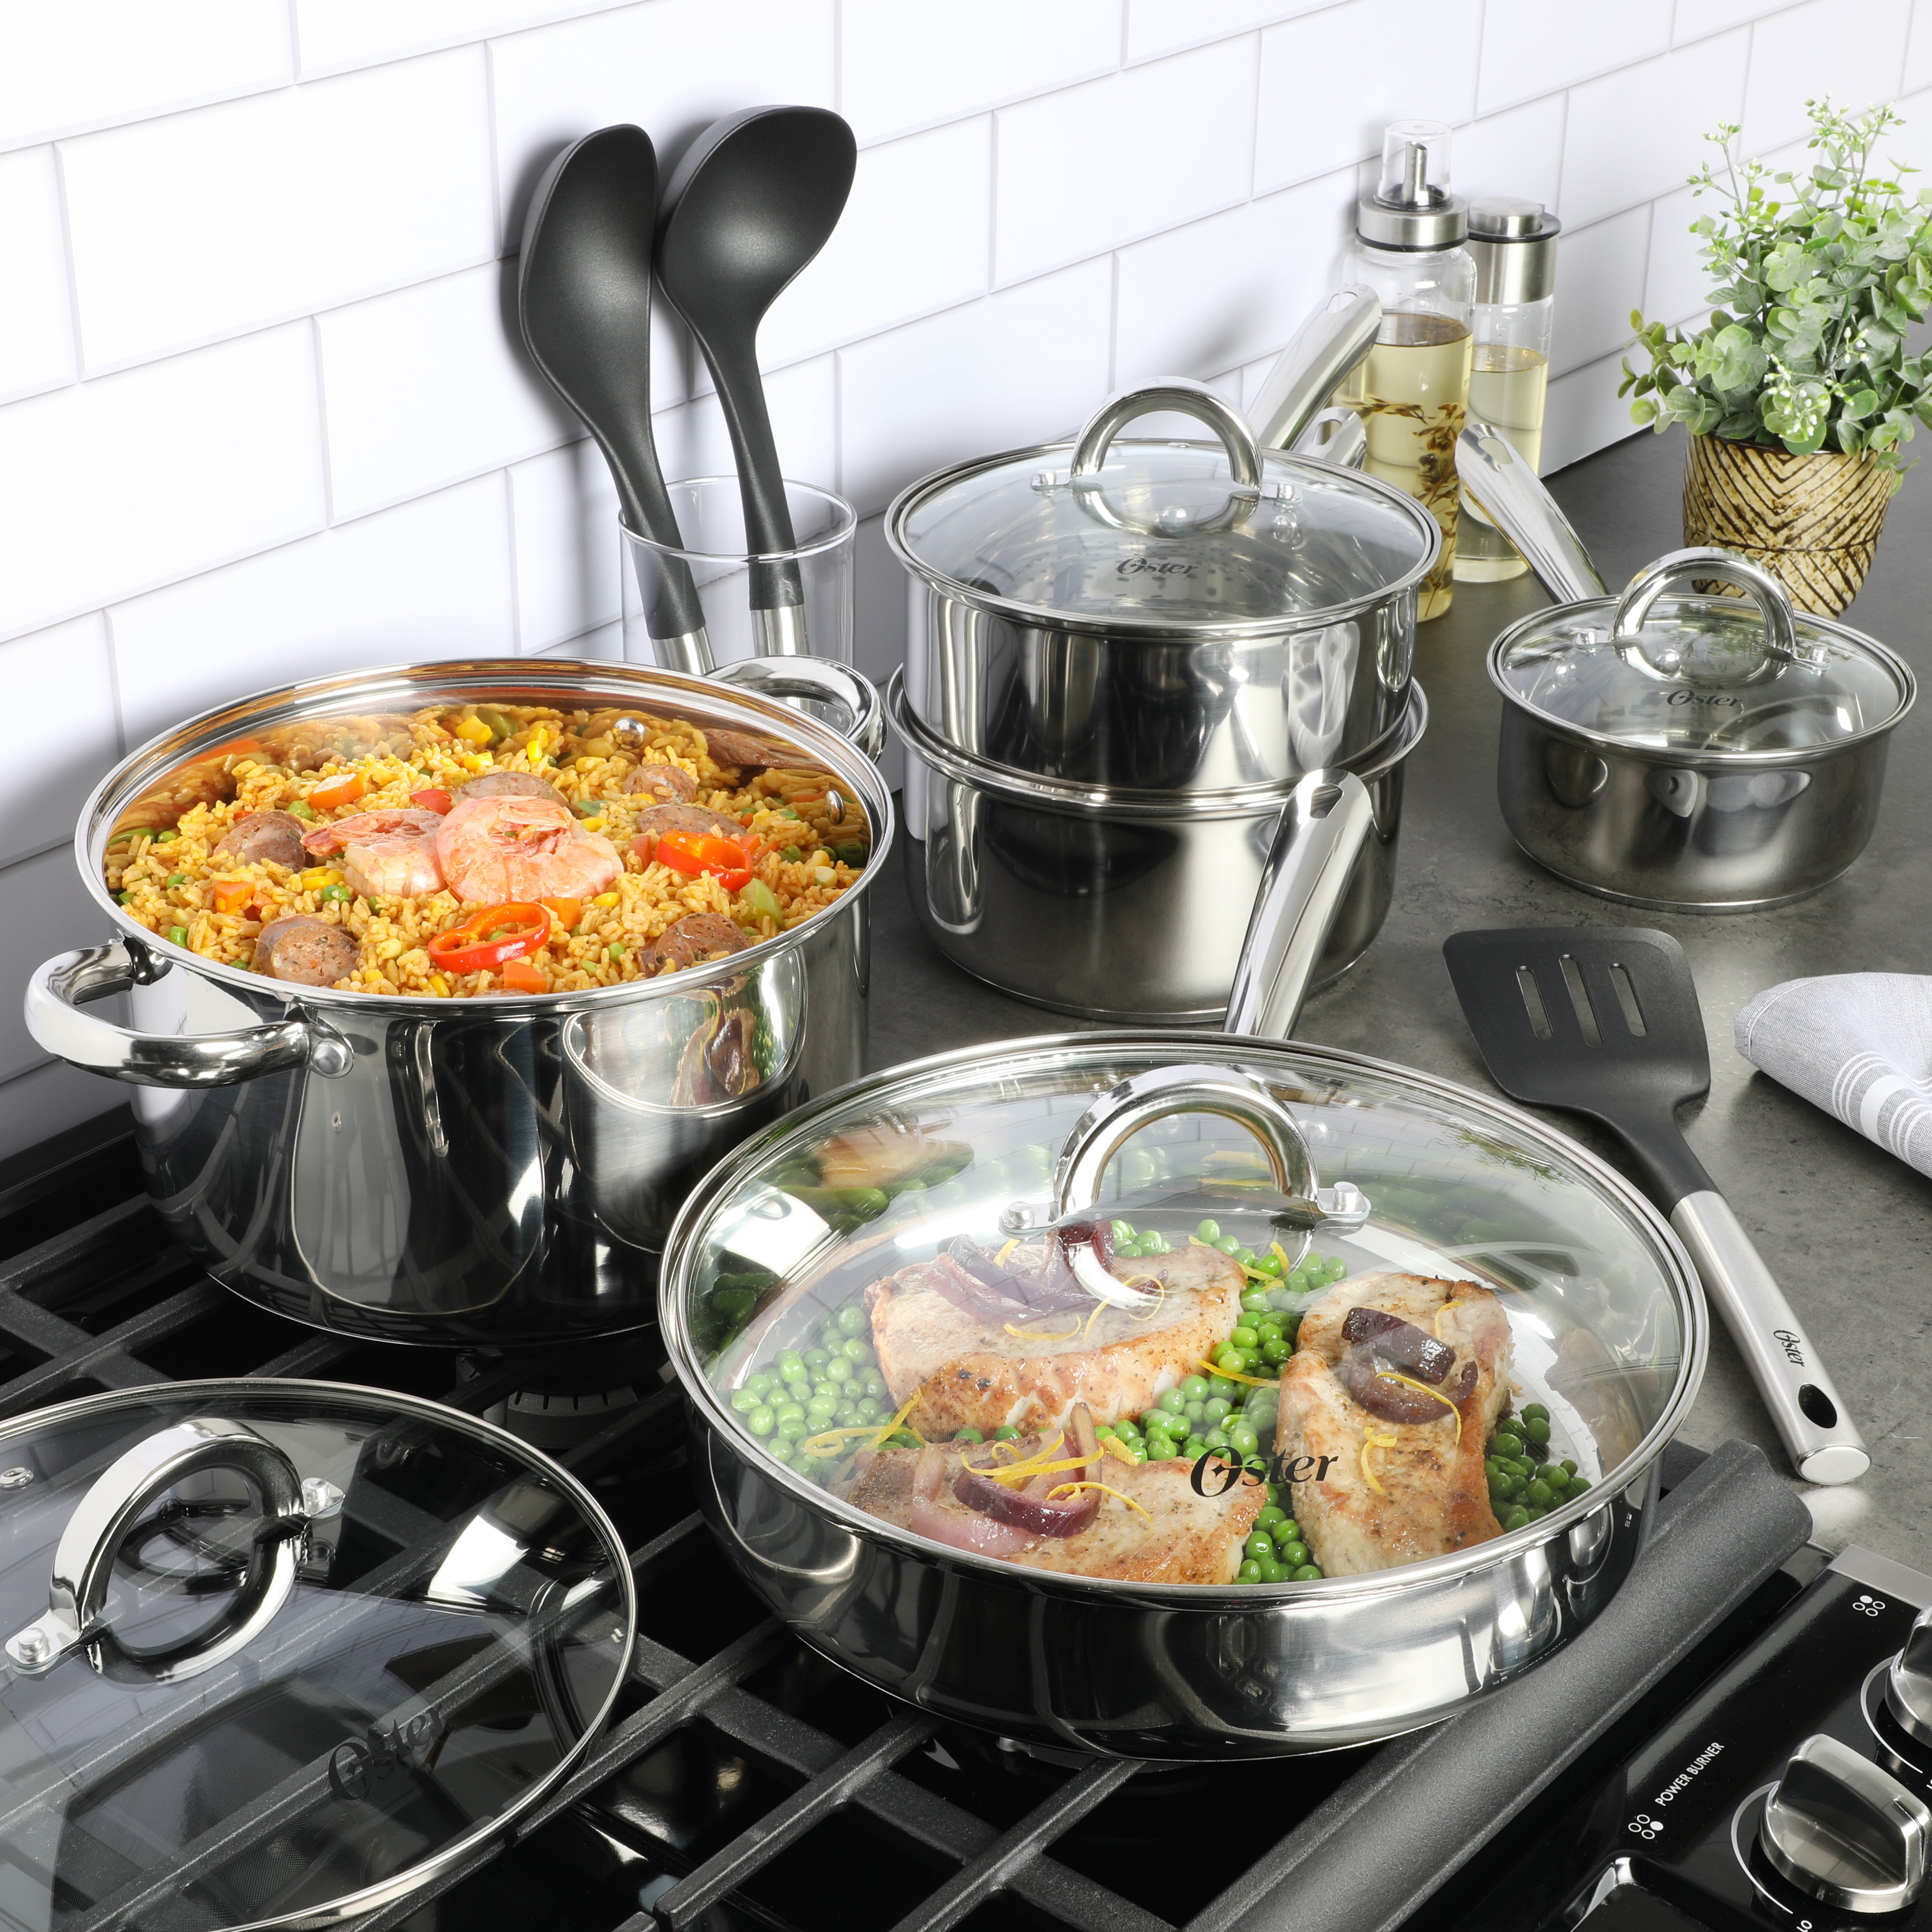 Oster Cutlery 14 Piece Set Stainless steel Block Wood Storage Steak Kn –  Kitchen & Restaurant Supplies